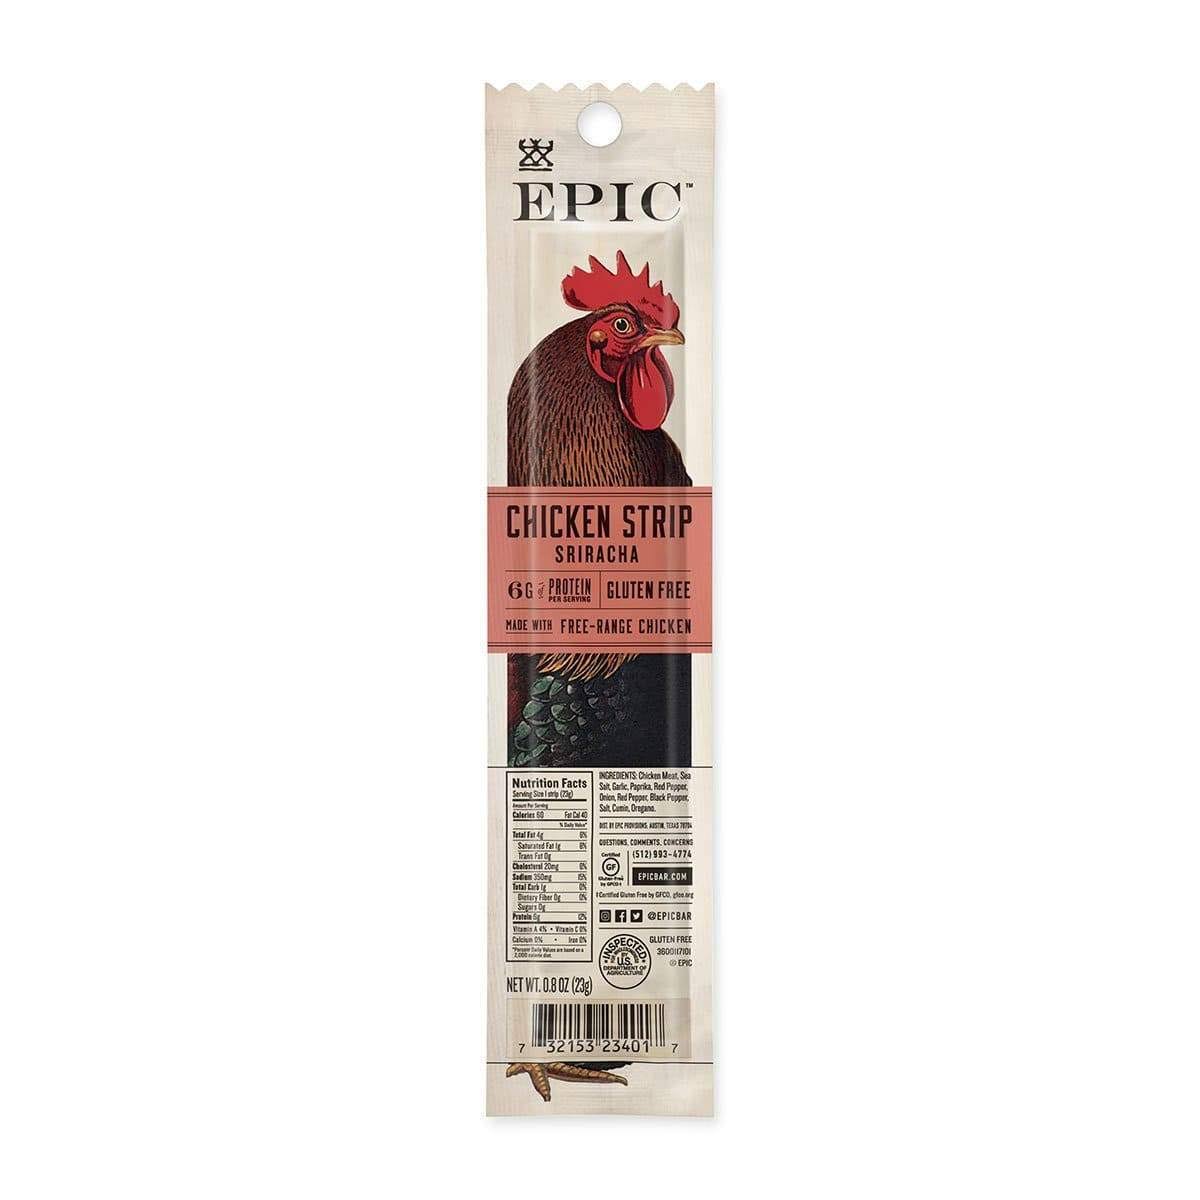 Epic Chicken Strip, Sriracha - 0.8 oz